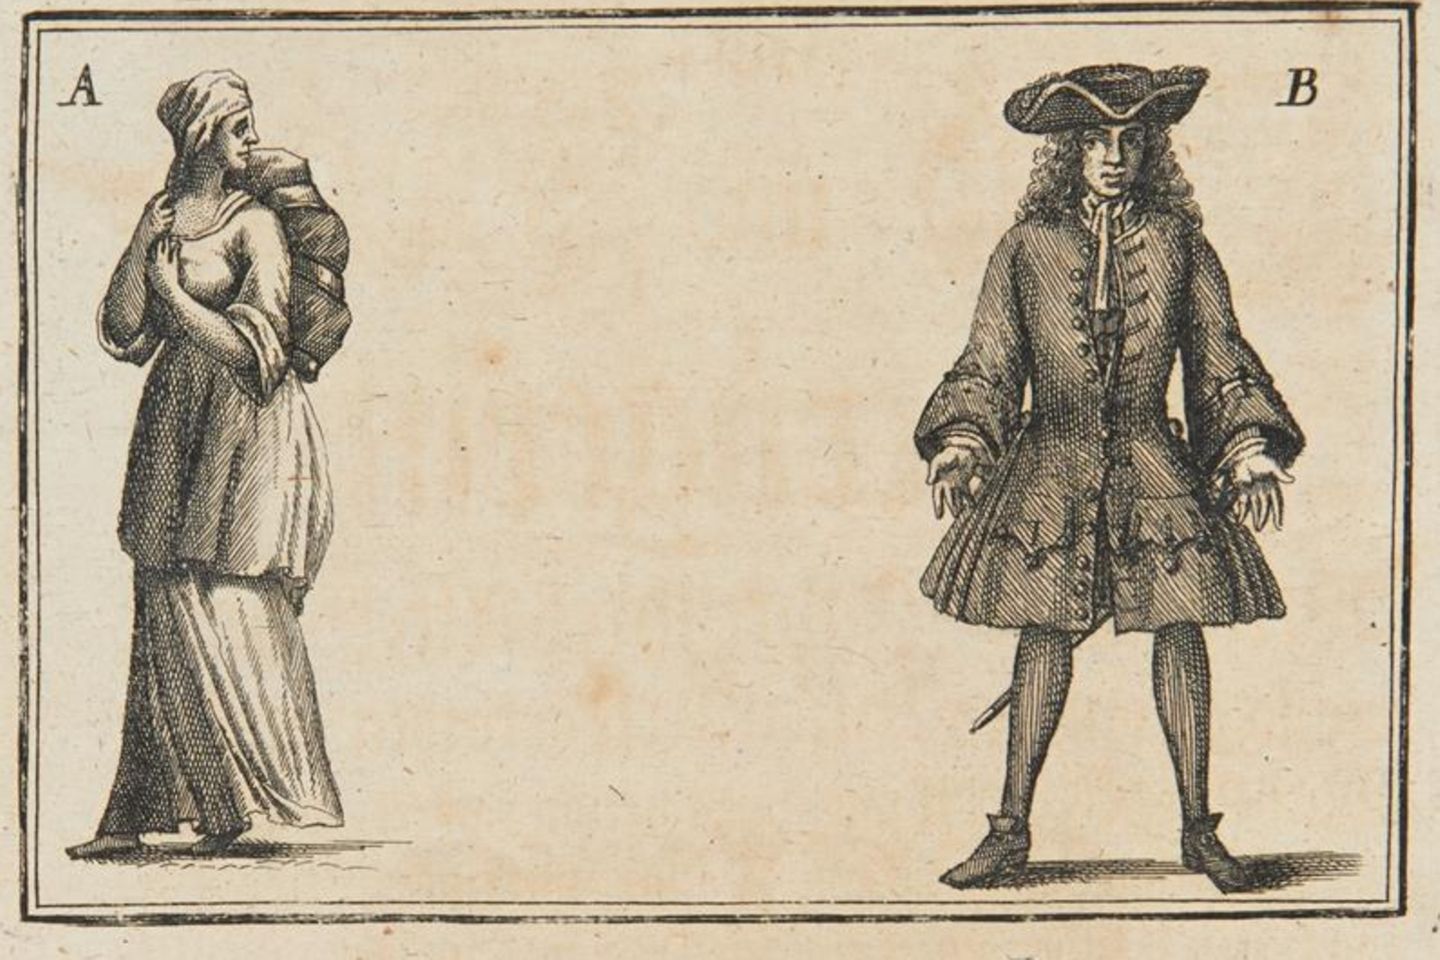 1720 diffamierte eine Broschüre Catharina Linck, die sich als Anastasius Rosenstengel ausgegeben hatte, als "Land-und Leute-Betrügerin"